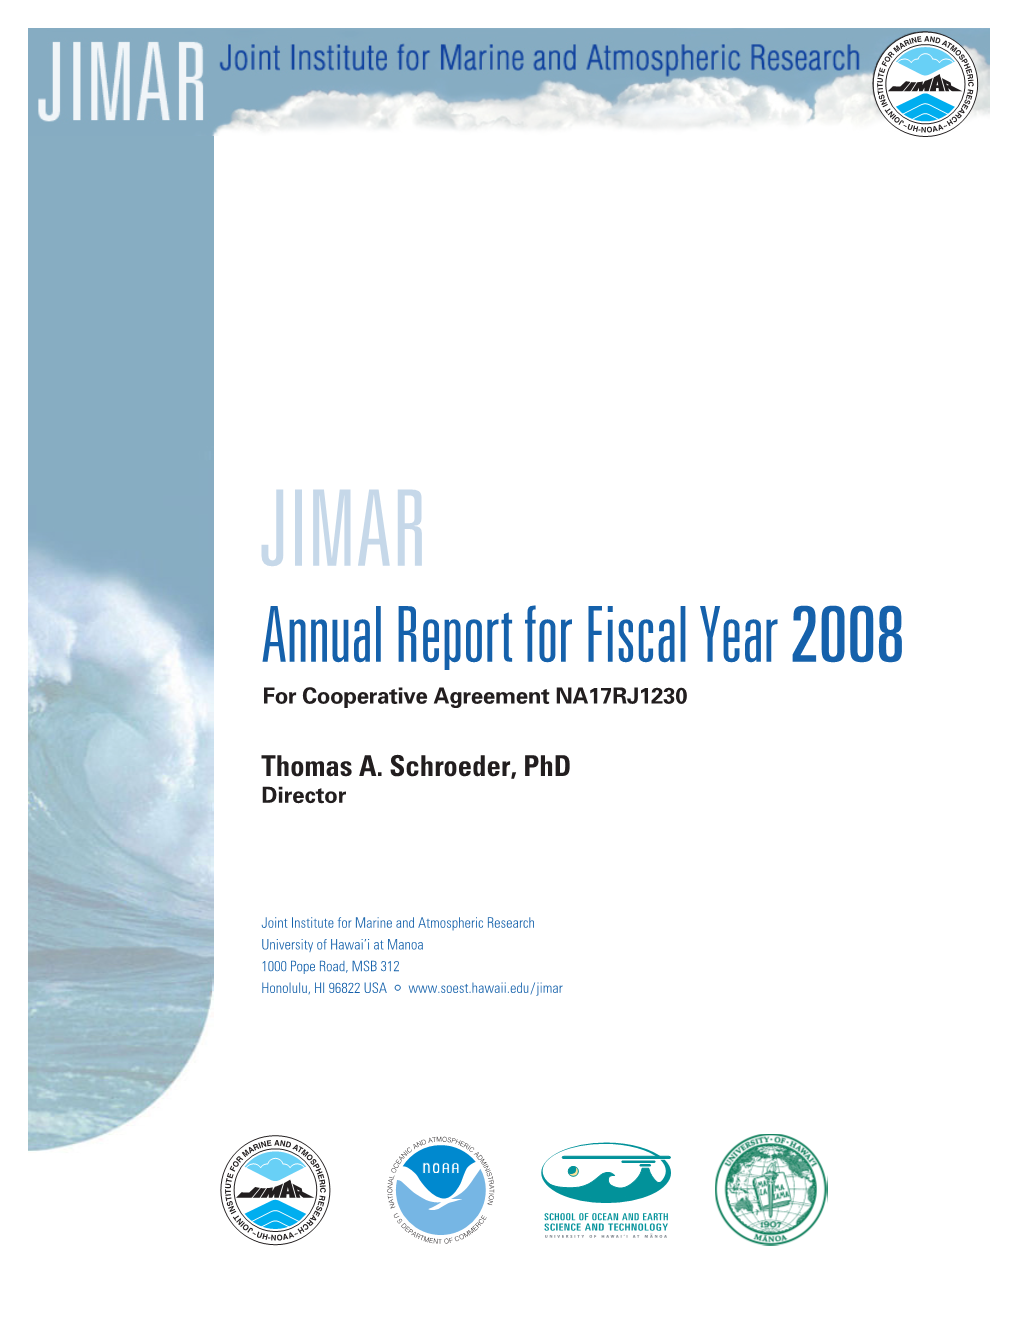 2008 JIMAR Annual Report